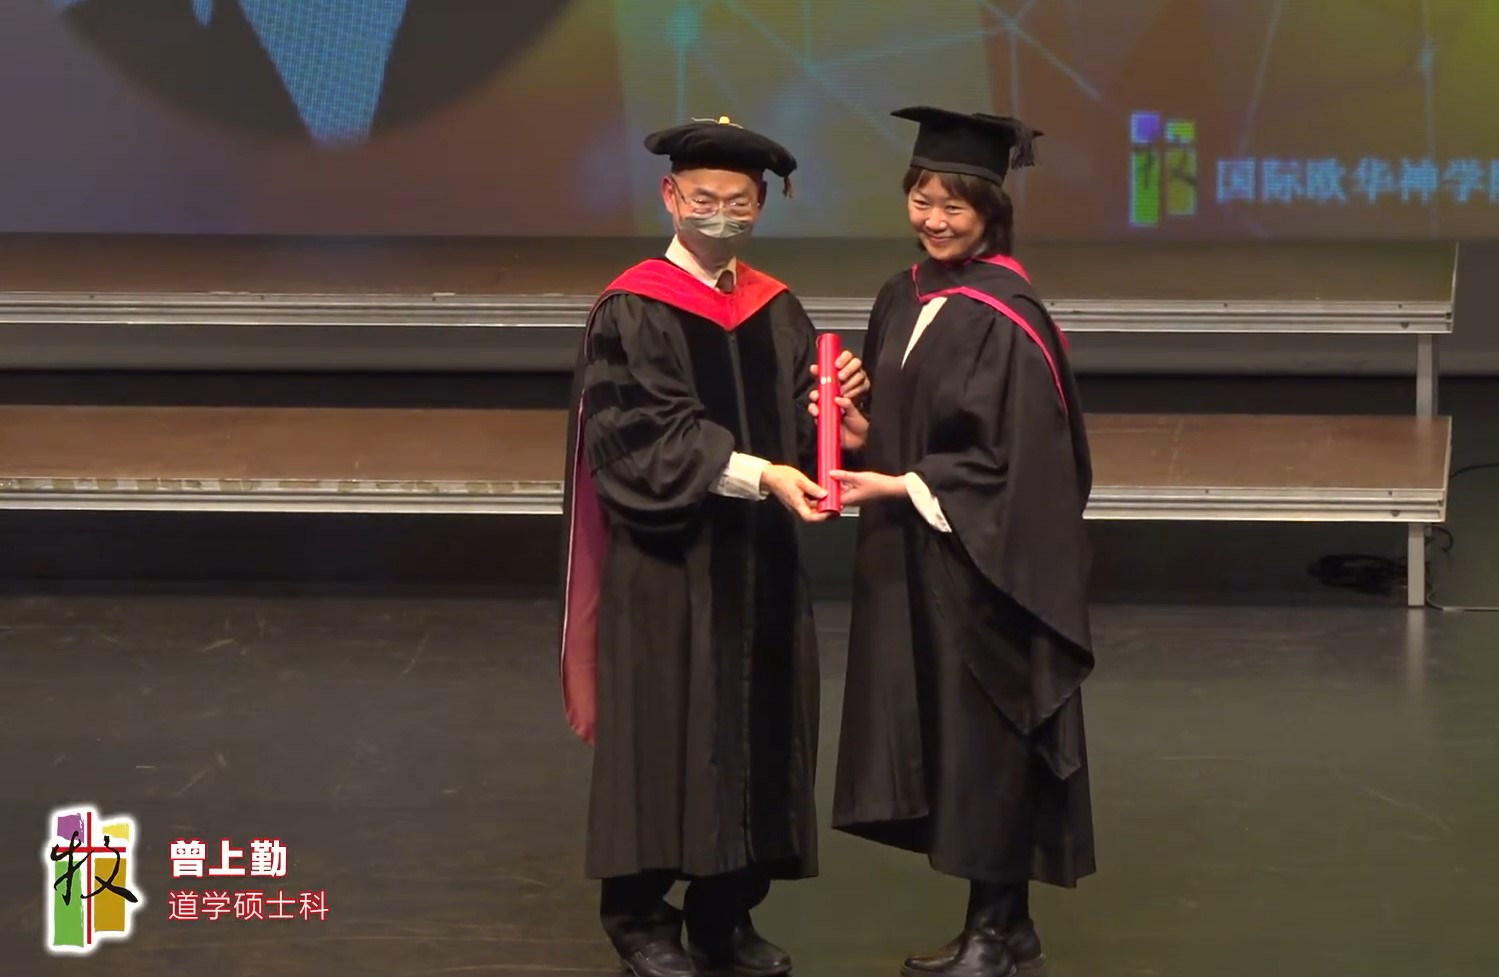 廖元威院長頒給畢業生畢業證書。(圖/直播截取)